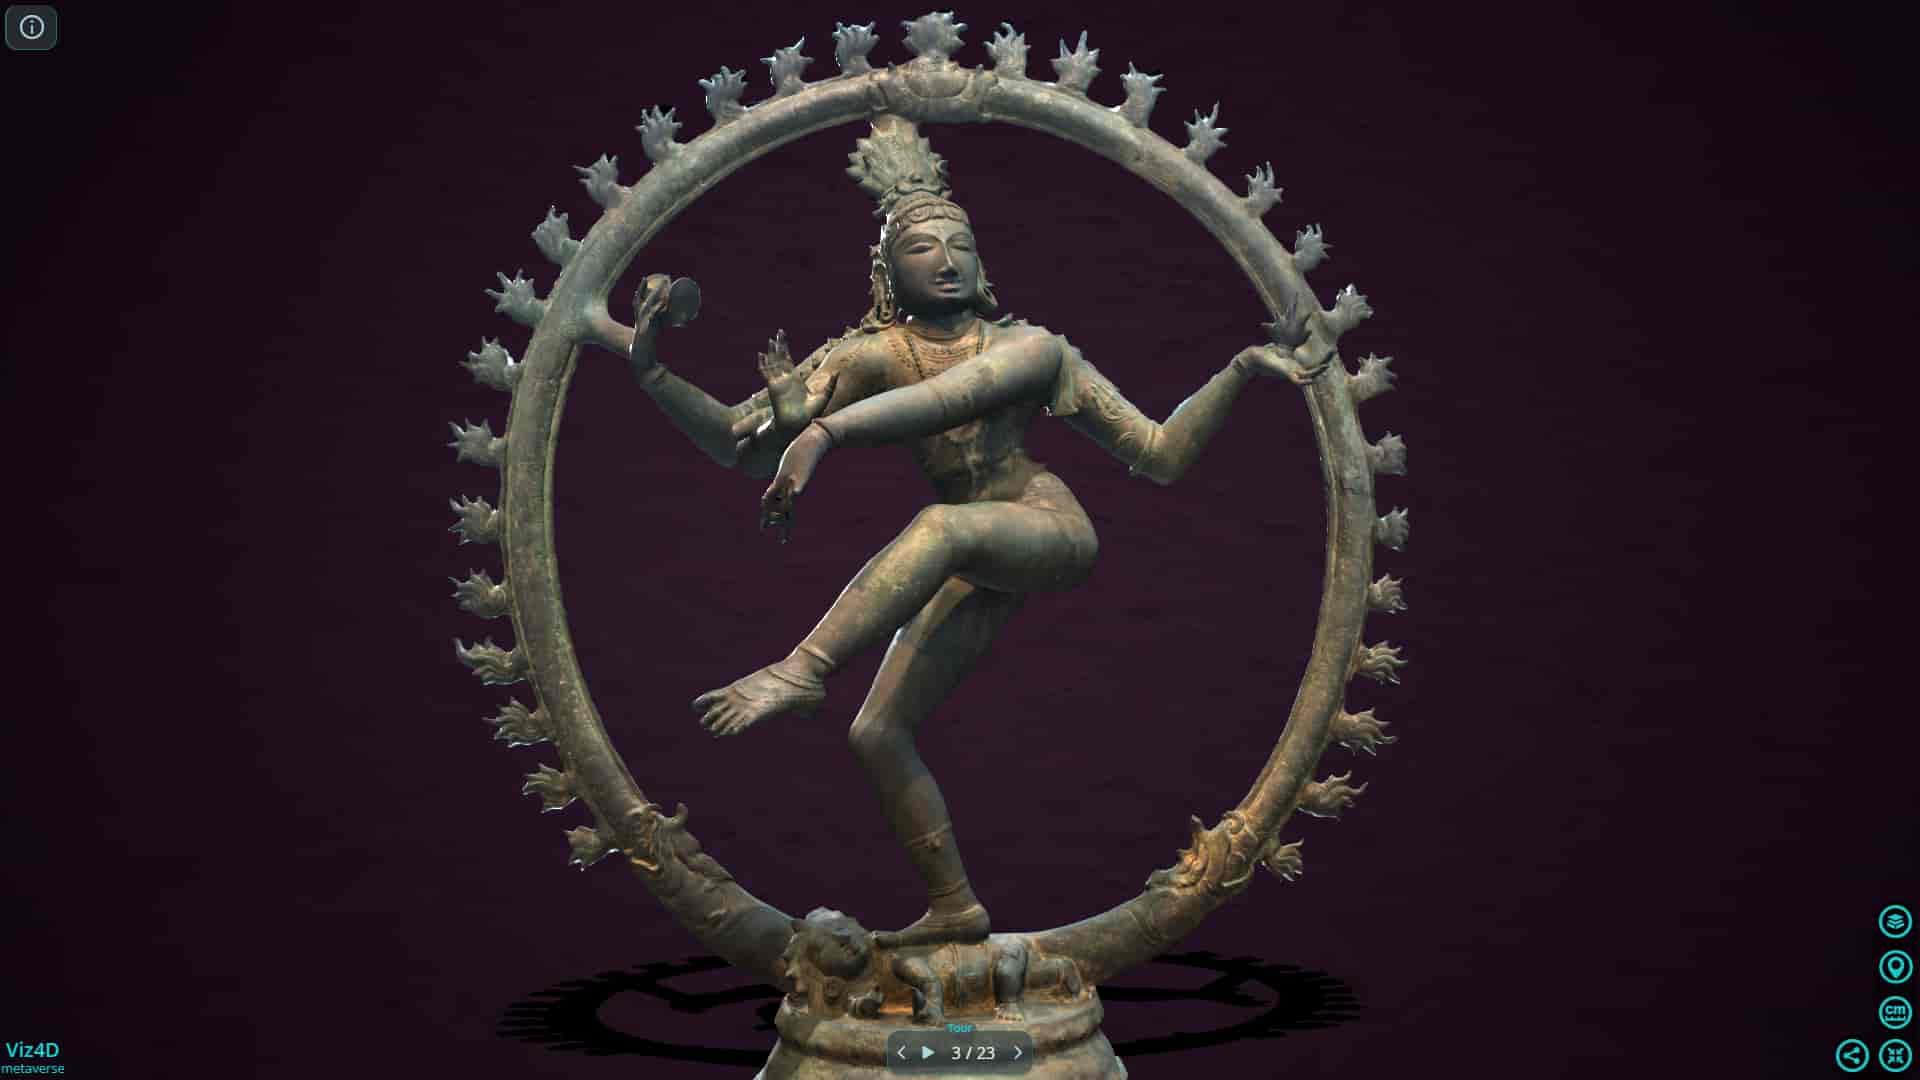 Shiva 1000 năm tuổi - Bảo tàng Nghệ thuật Cleveland